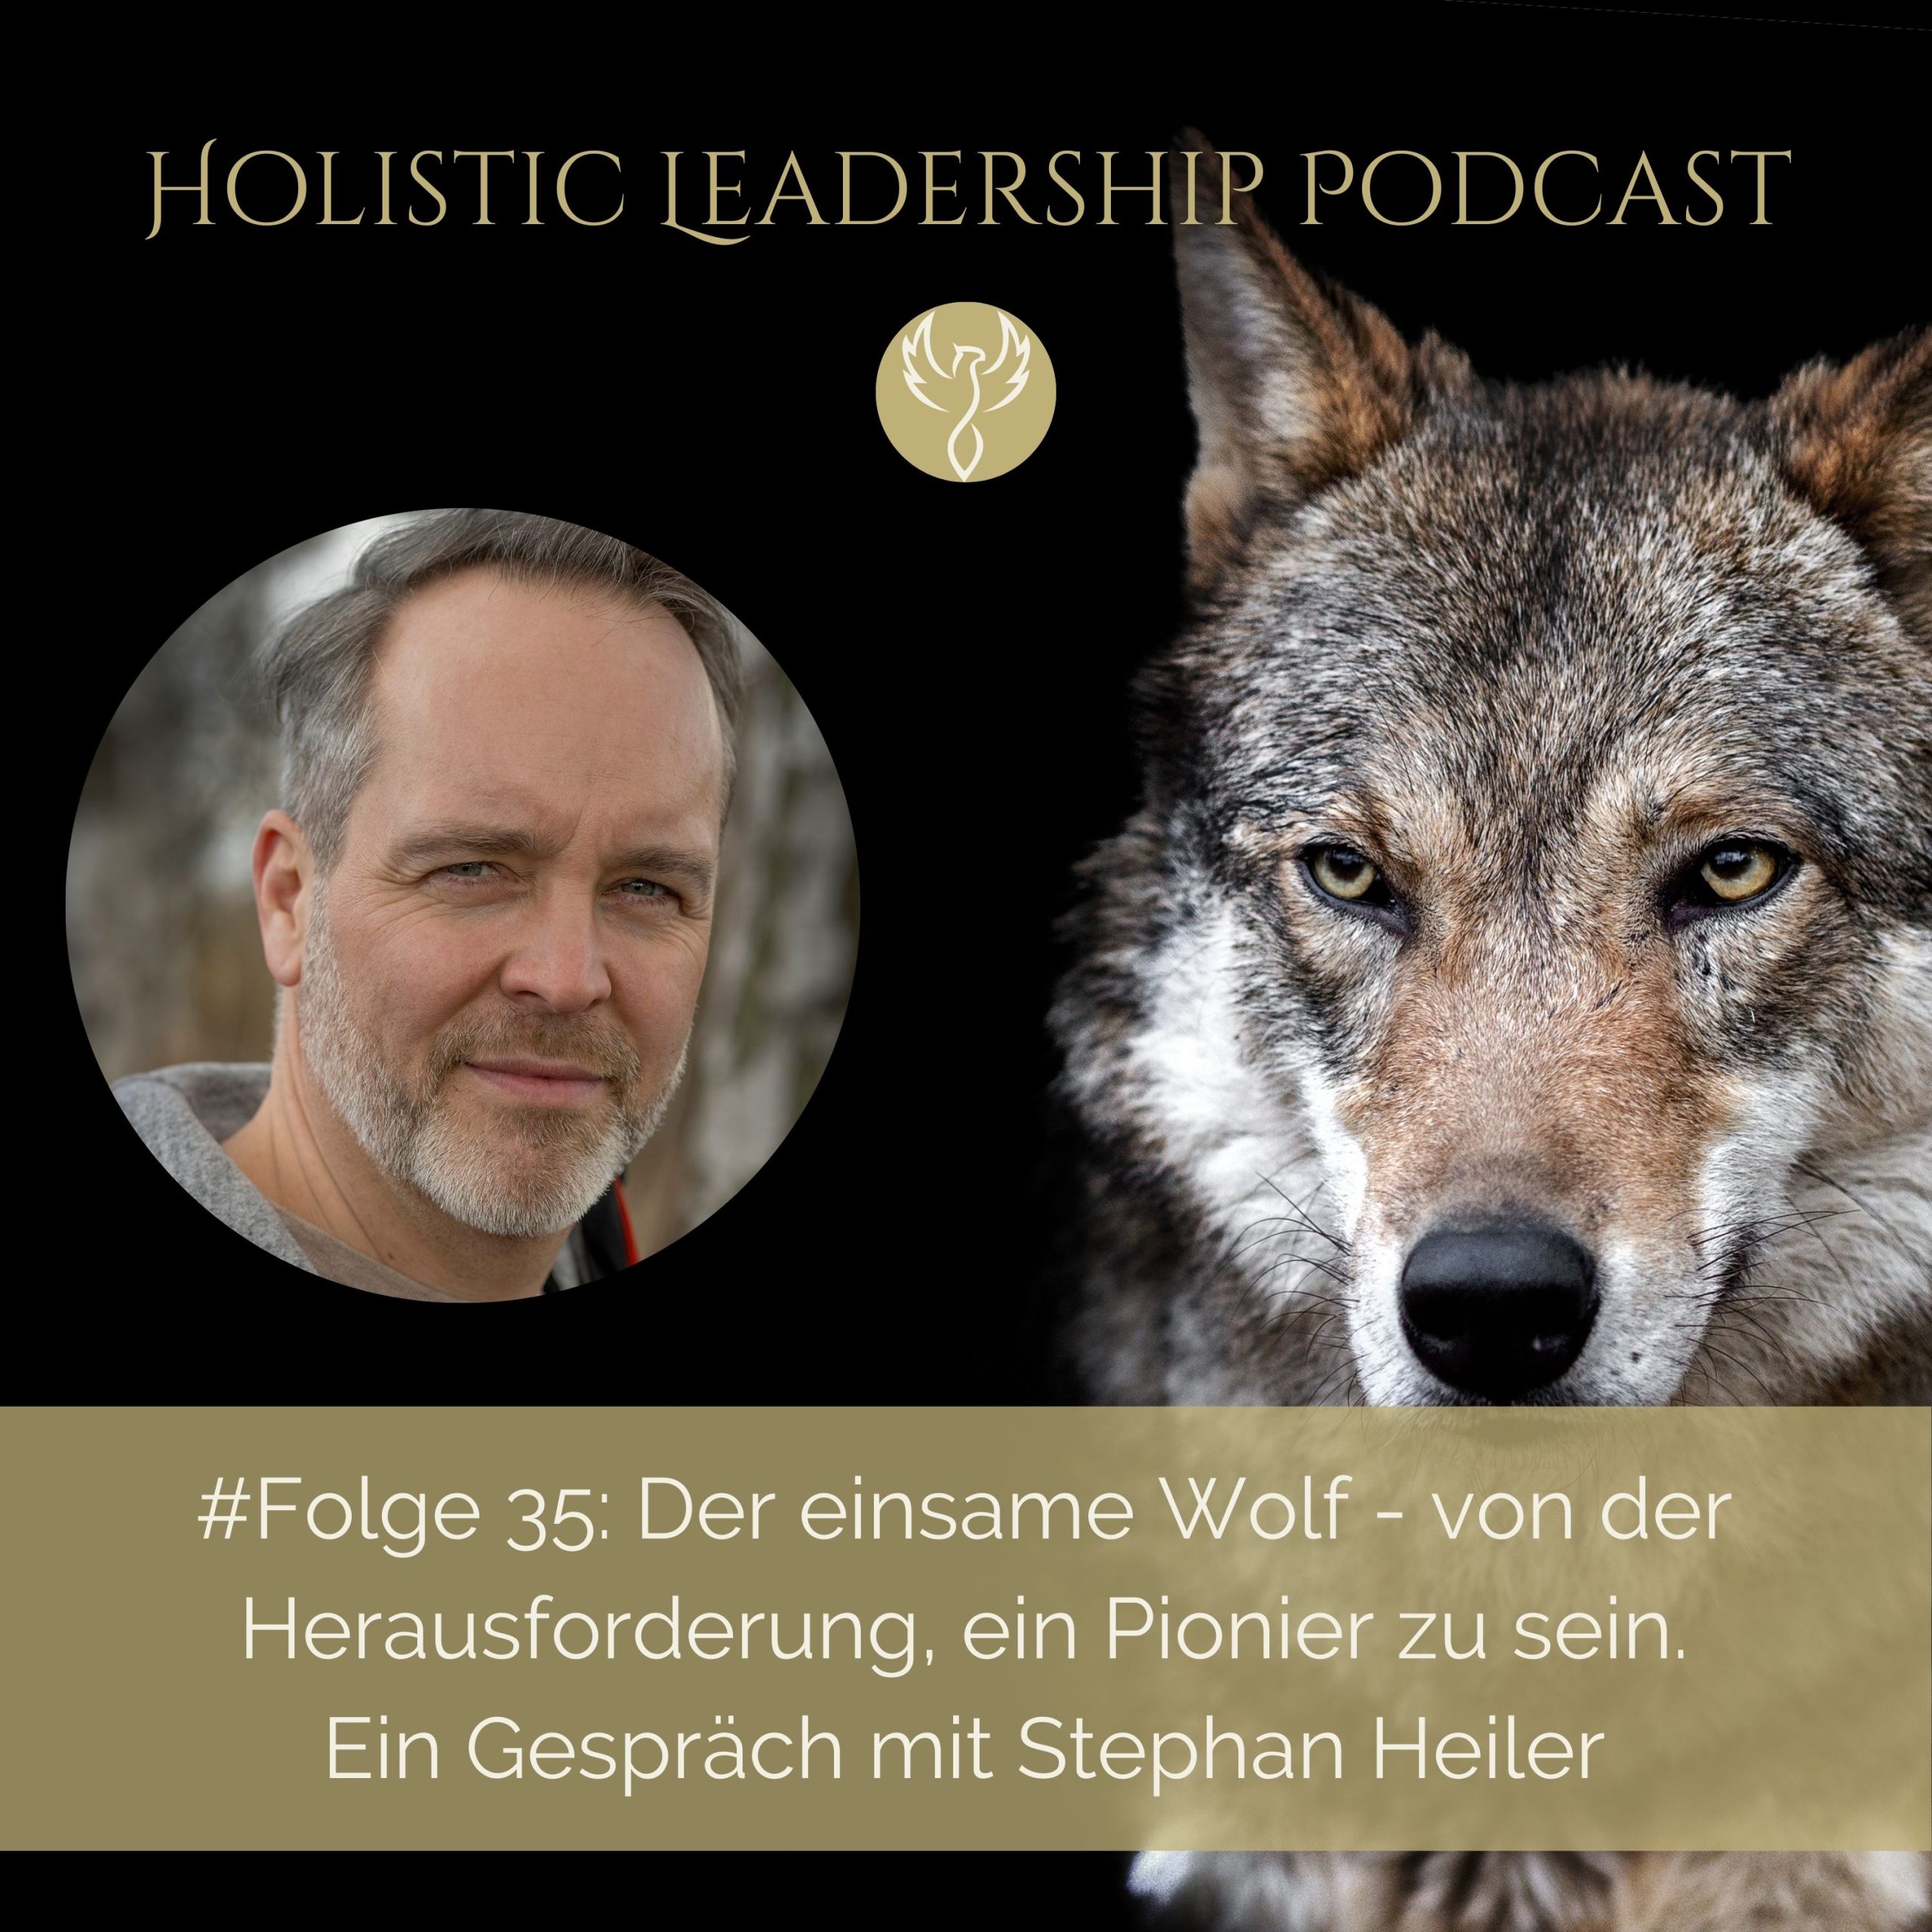 Podcast, Stephan Heiler, Unternehmer, Unternehmen, Transoformation